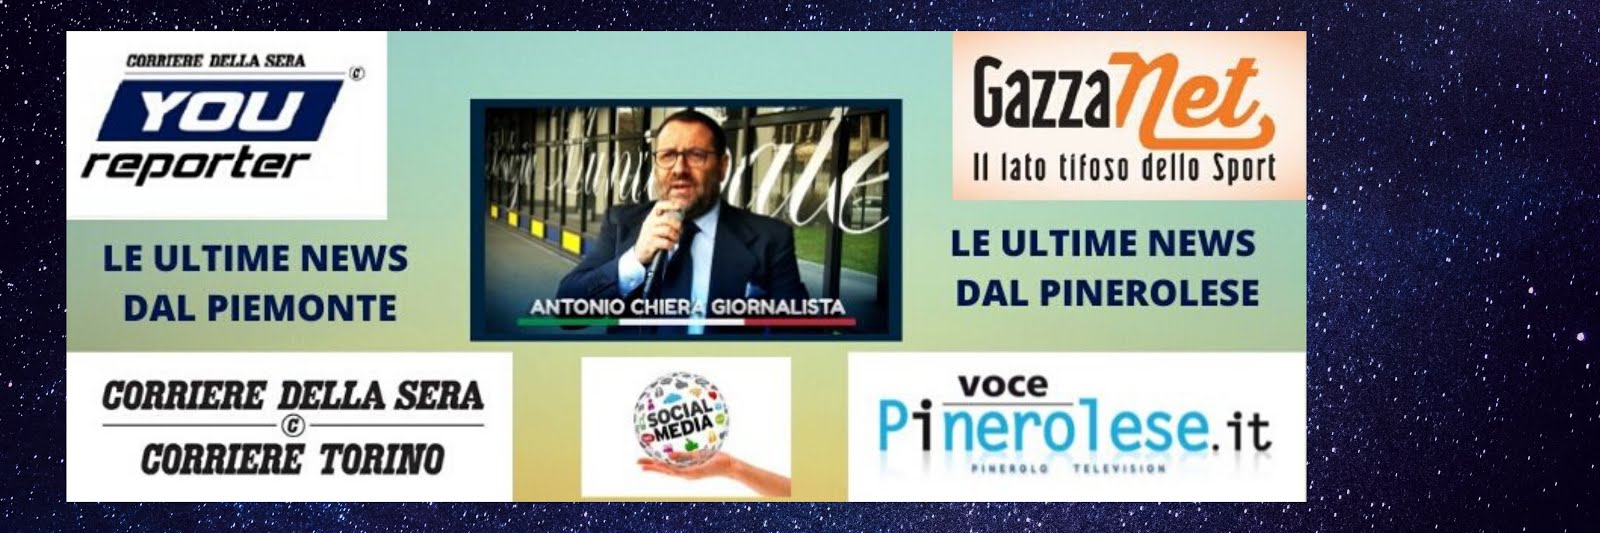 Antonio Chiera Giornalista - Corriere della Sera - Corriere Torino - Voce Pinerolese